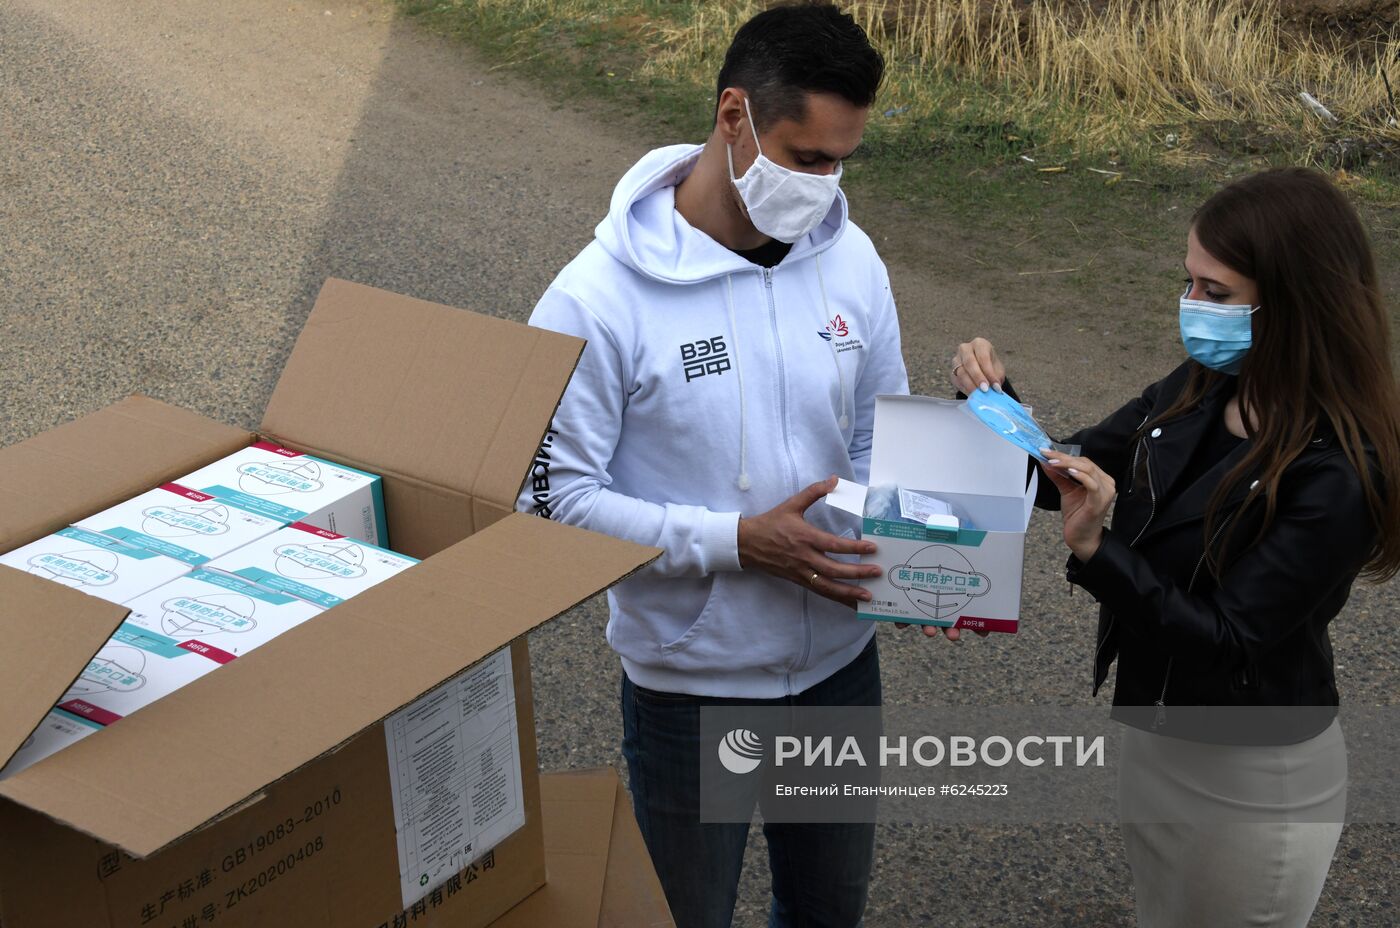 Партия гуманитарной помощи поступила в Забайкалье